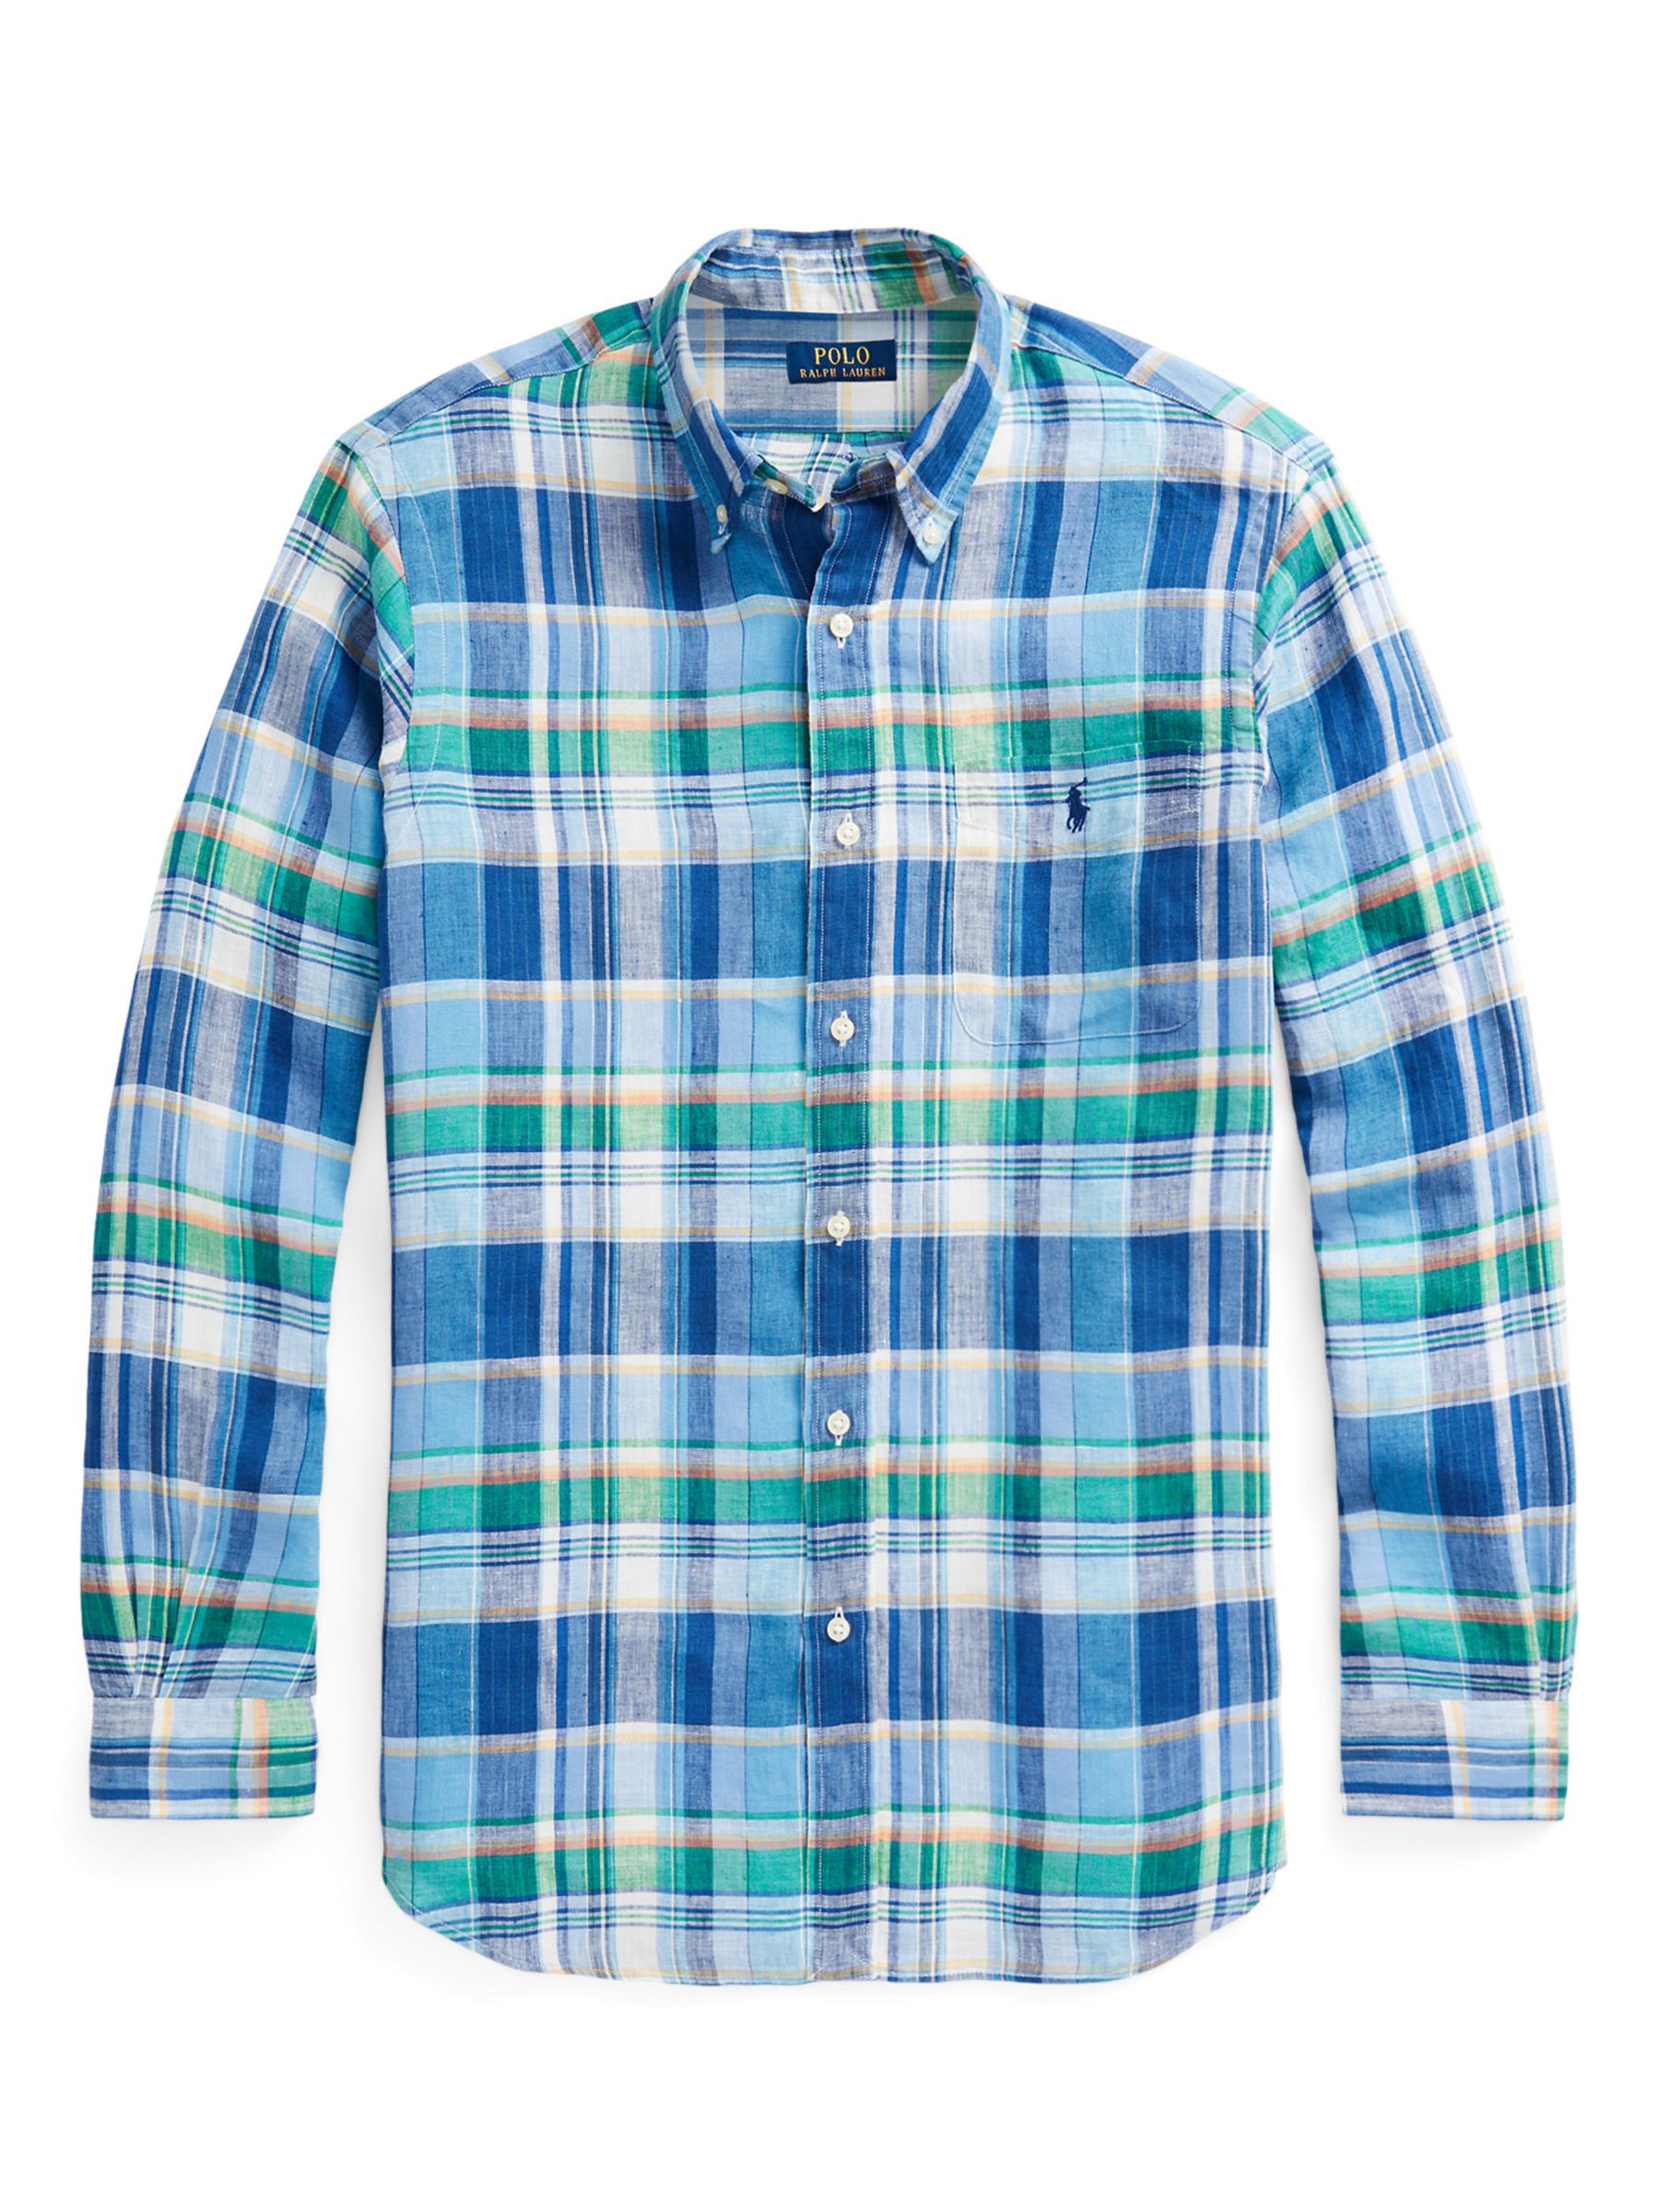 Ralph Lauren Linen Long Sleeve Check Shirt, 6357ablue/Greenmulti, S